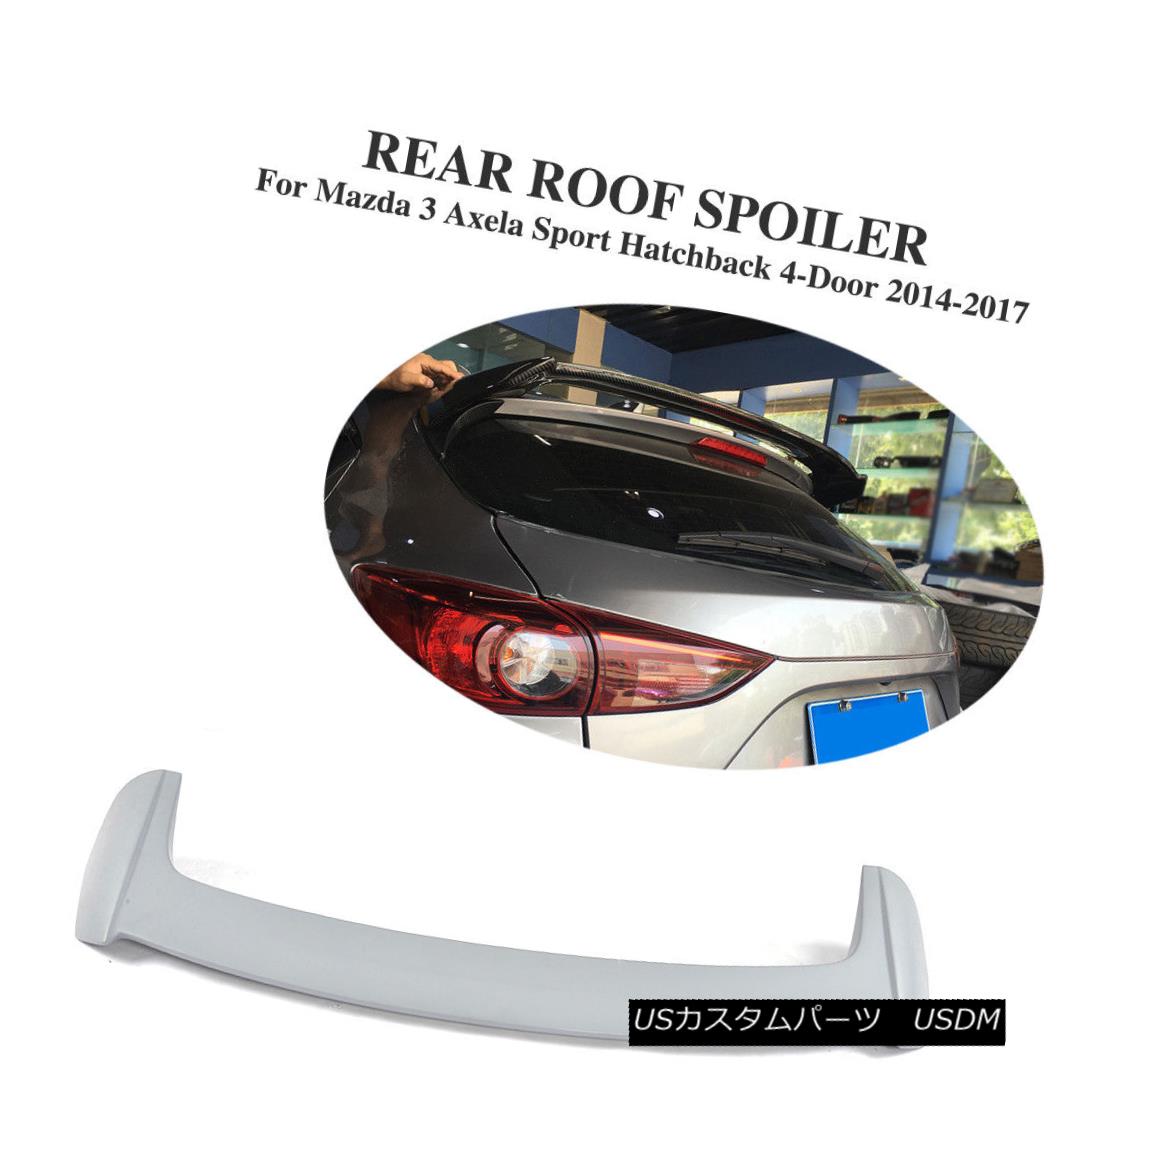 エアロパーツ Grey Roof Trunk Rear Spoiler FRP Fit For Mazda 3 Axela Hatchback 4-Door 14-17 グレイルーフトランクリアスポイラーFRPフィットマツダ3アクセラハッチバック4ドア14-17